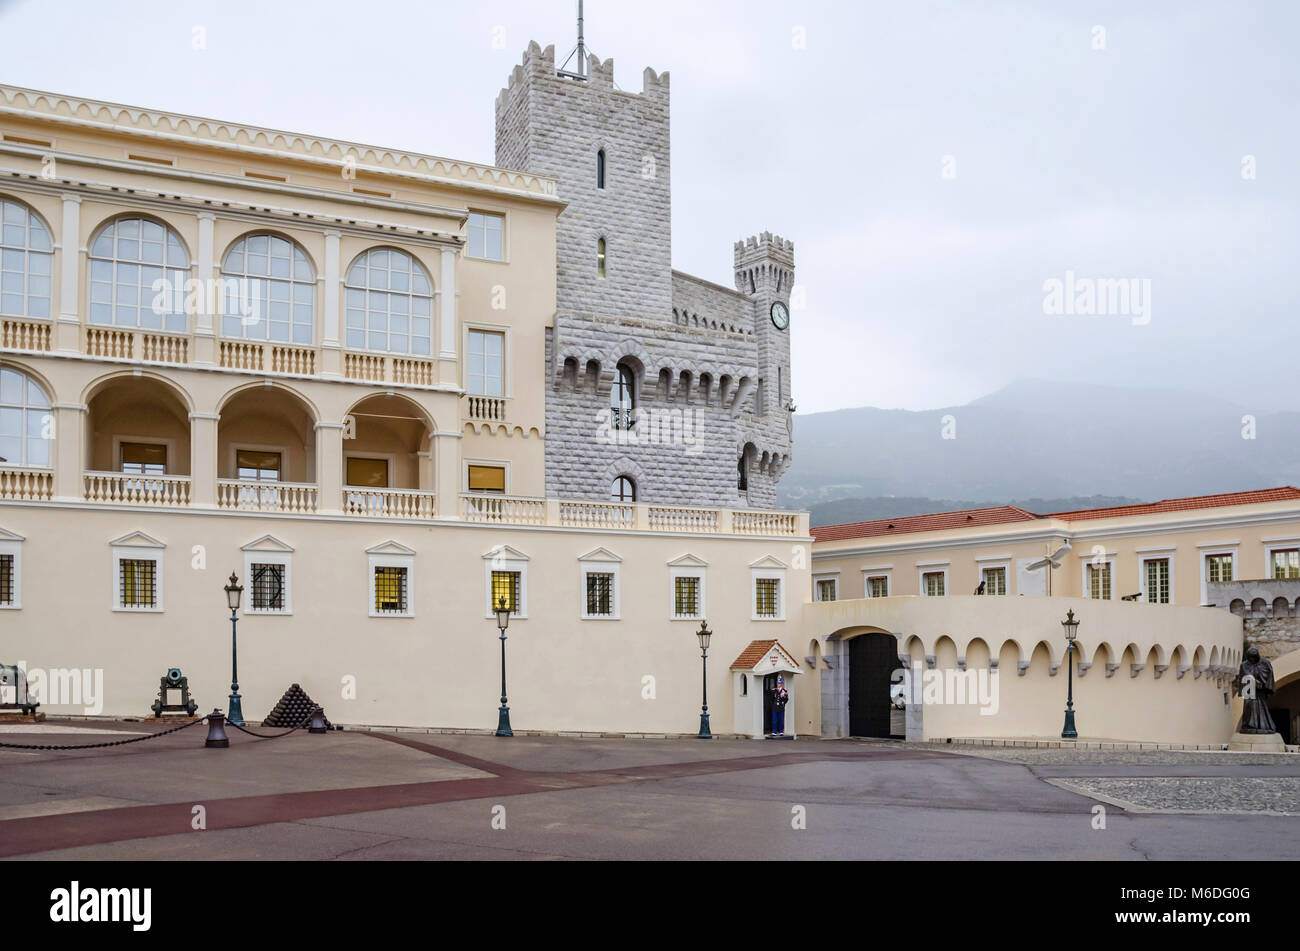 Monaco, Principauté de Monaco - 3 novembre, 2015 : Le point de vue du Palais princier, résidence de l'actuel roi Albert II avec palace guard Banque D'Images